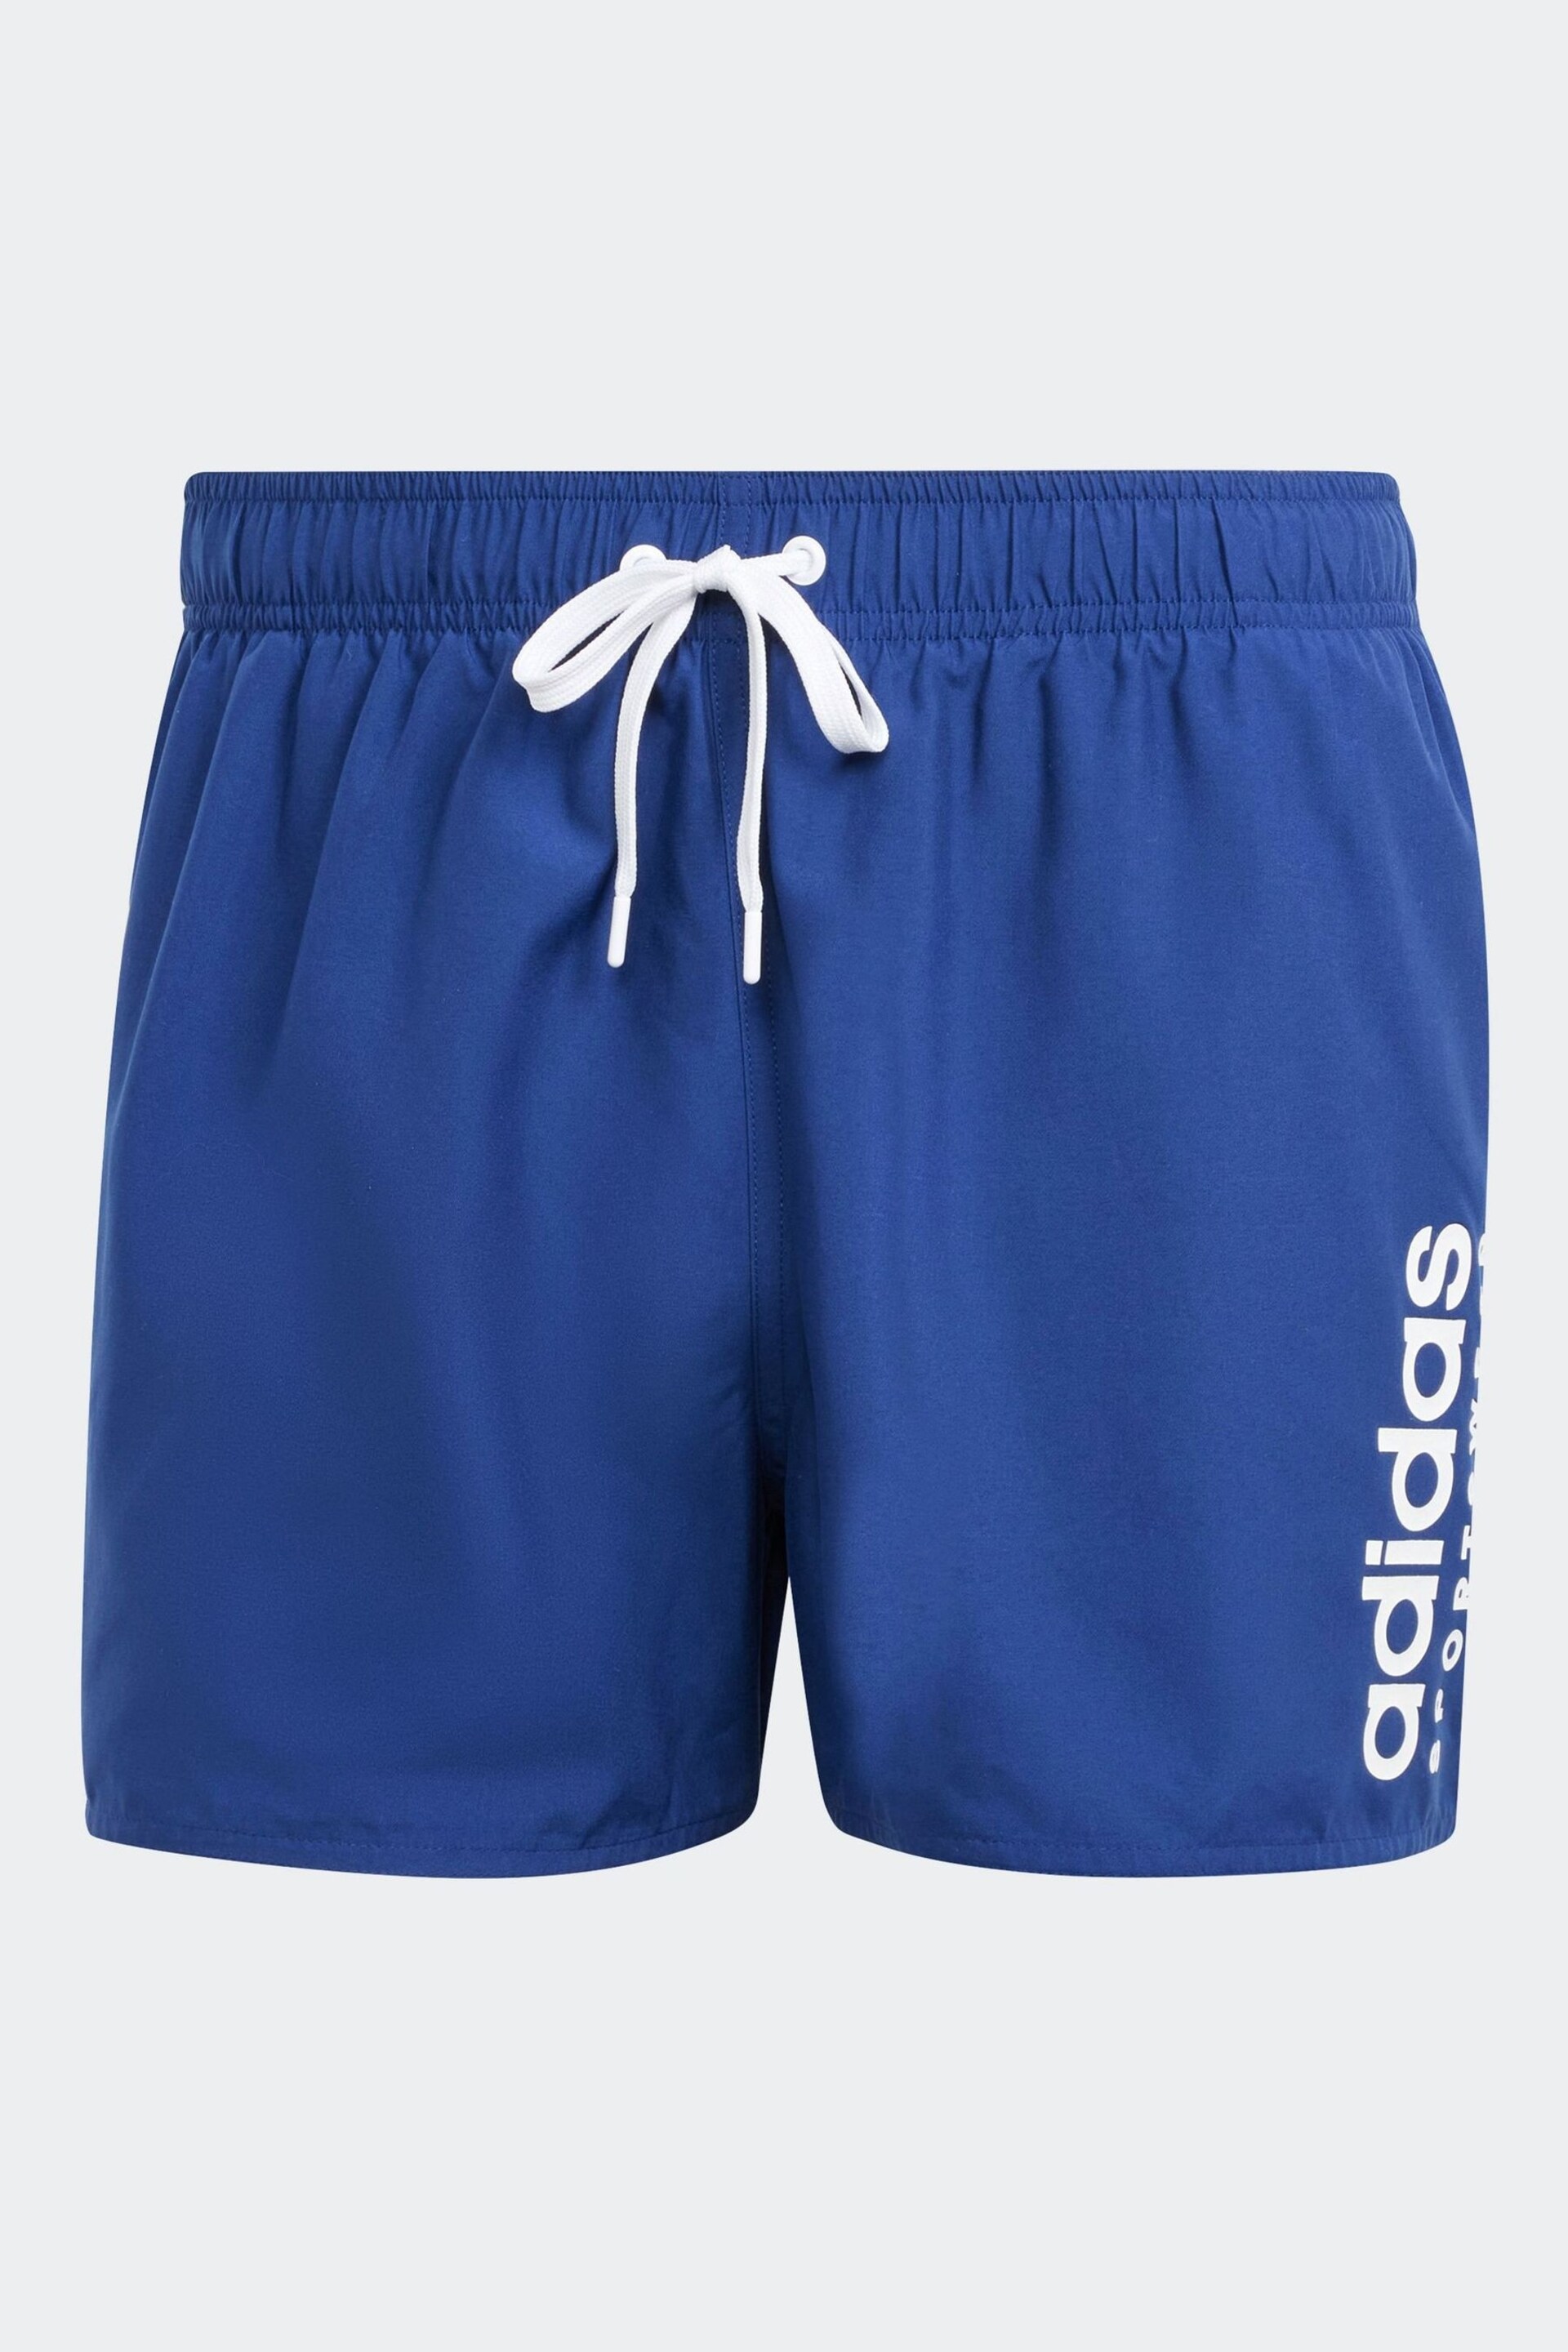 adidas Blue Essentials Logo Clx Shorts - Image 6 of 6